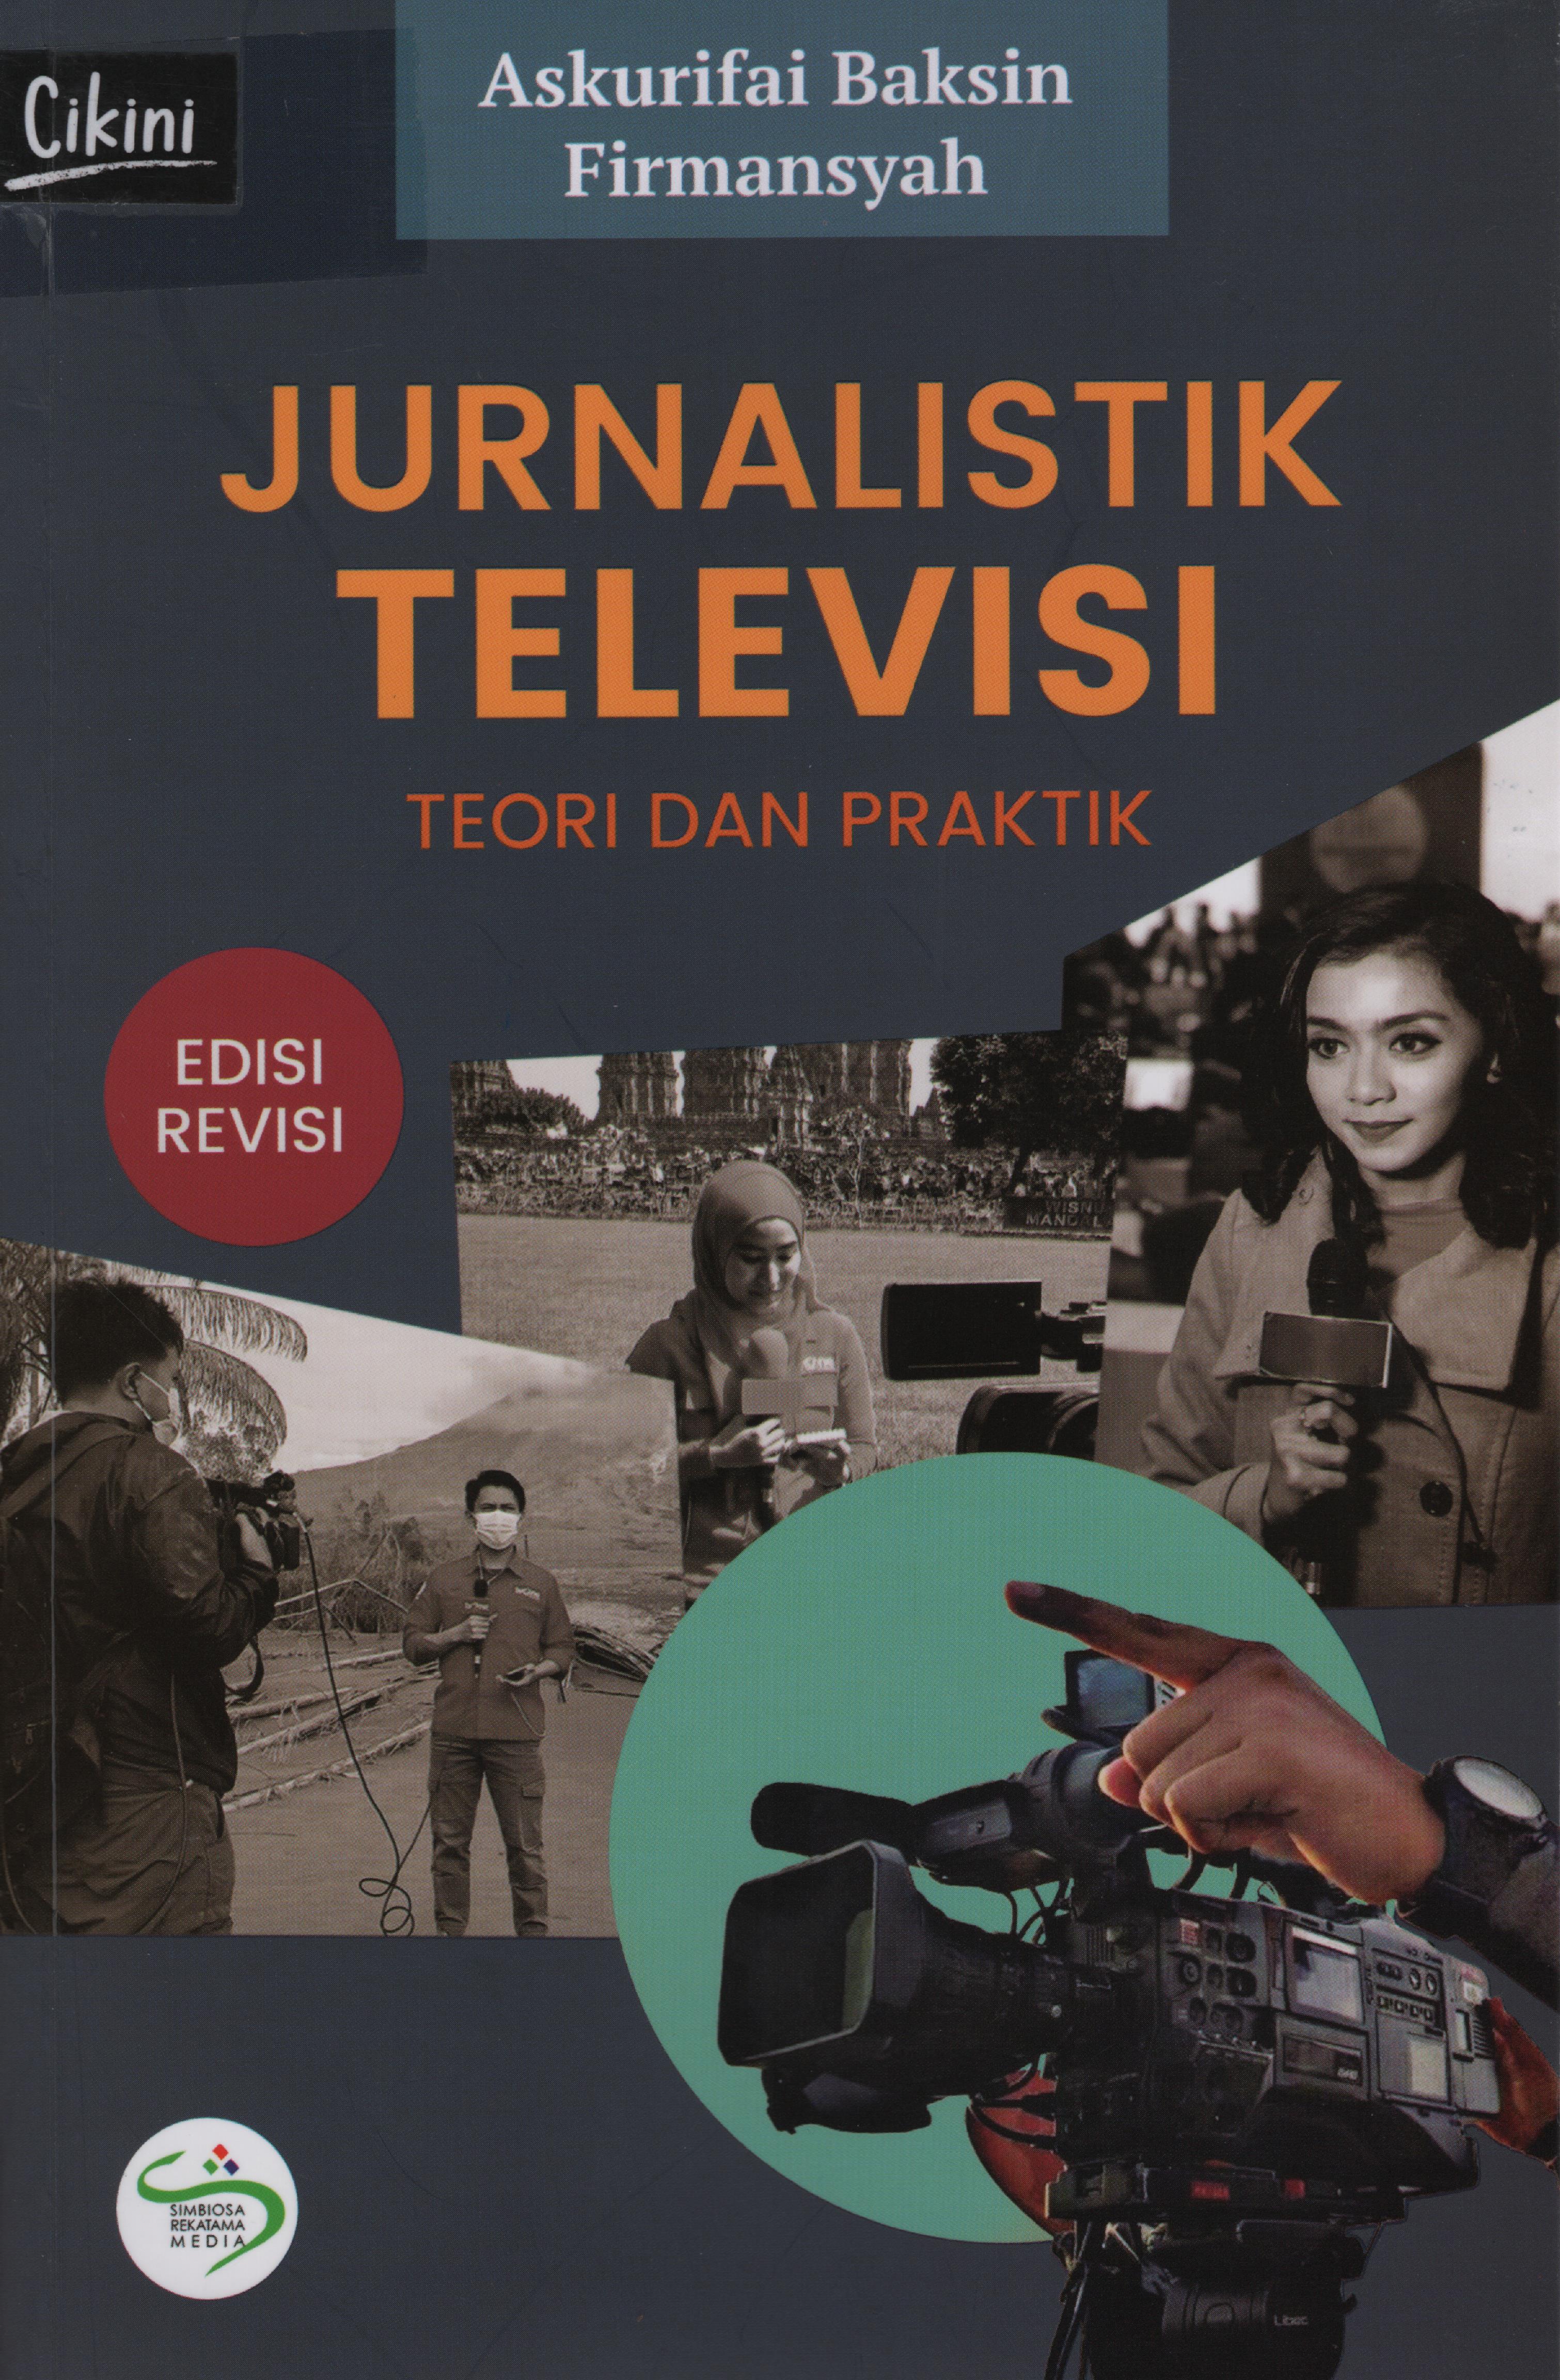 Jurnalistik televisi teori dan praktik